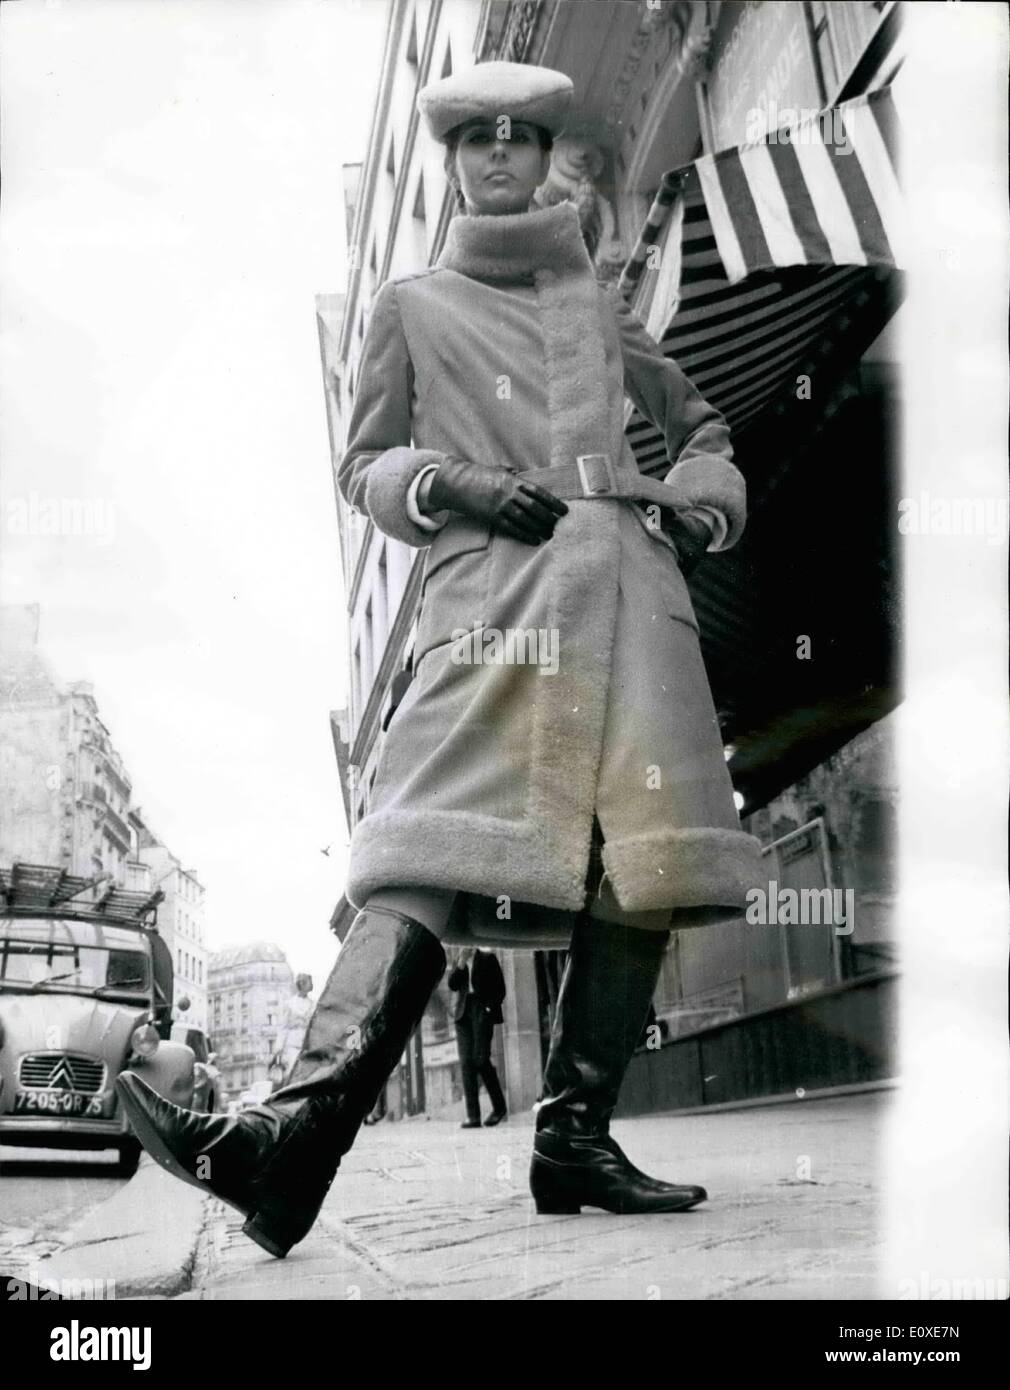 Juillet 07, 1966 - La mode française - style russe. : célèbre couturier, Scherrer, a conçu cet hiver manteau en velours côtelé orange sanguine, ourlé à fourrure fur hat de match. il est porté sur une mini jupe, avec genou-hautes bottes de style russe. Banque D'Images